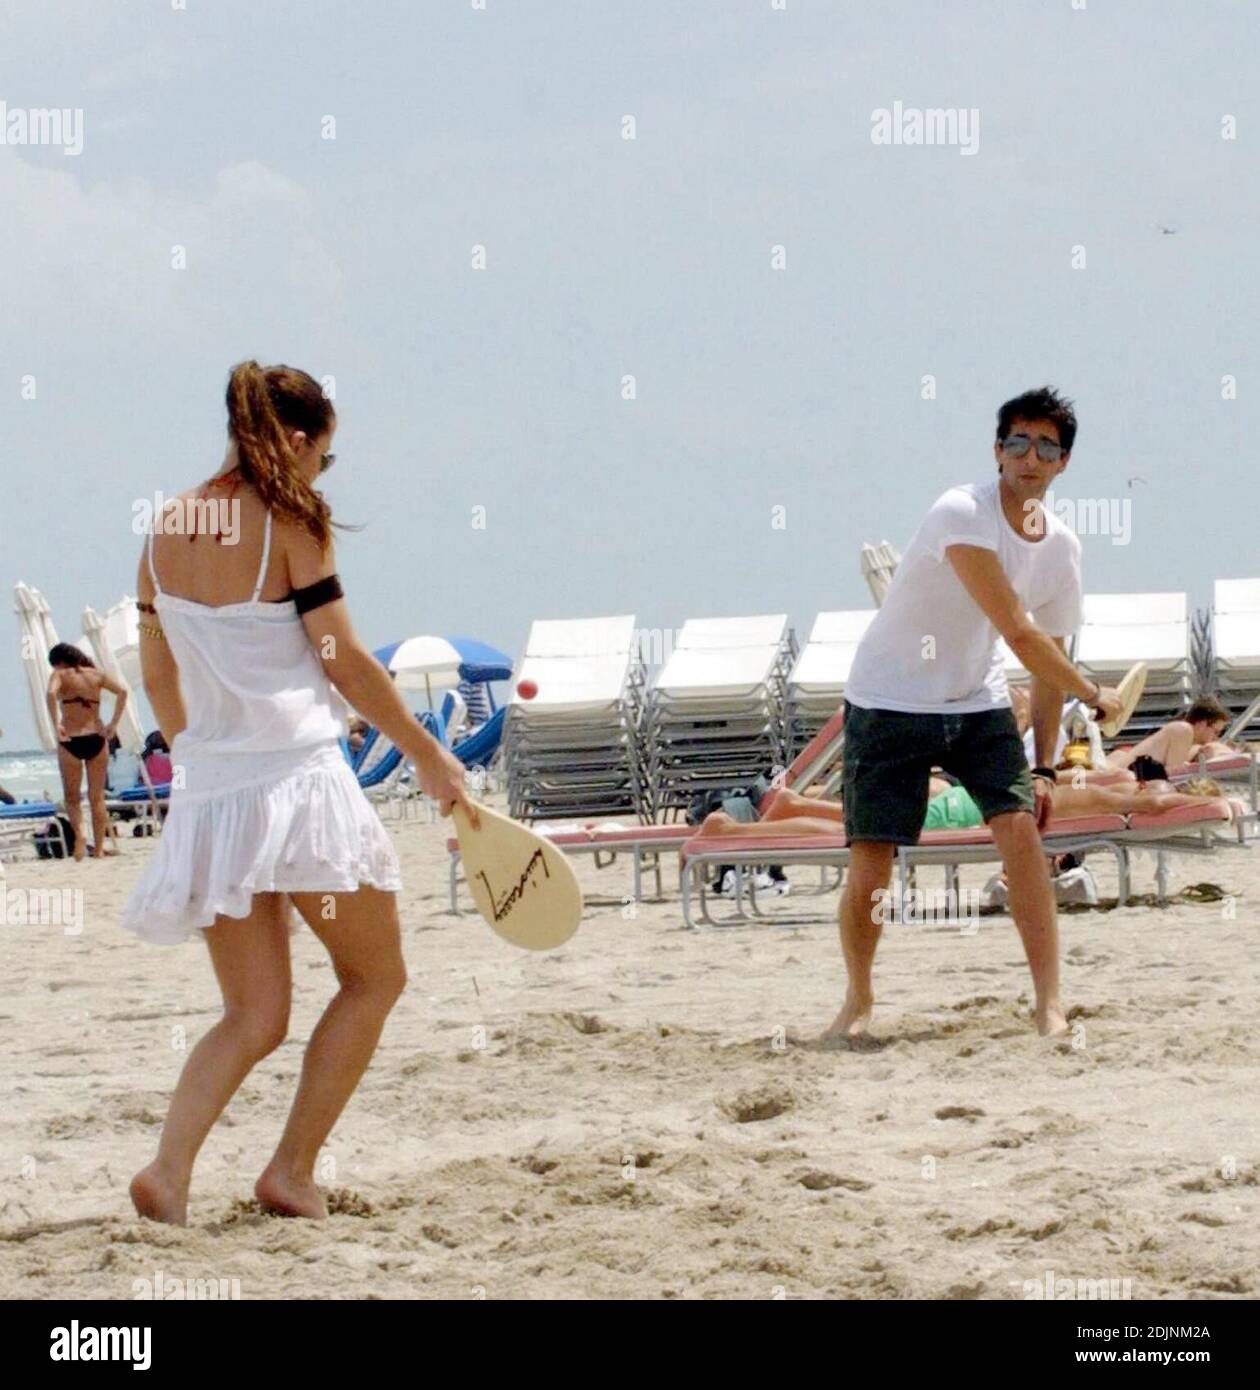 Adrien Brody y su nueva novia la actriz española Elsa Pataky juegan al remo y alisa en Miami Beach, 8/9/06 Foto de stock